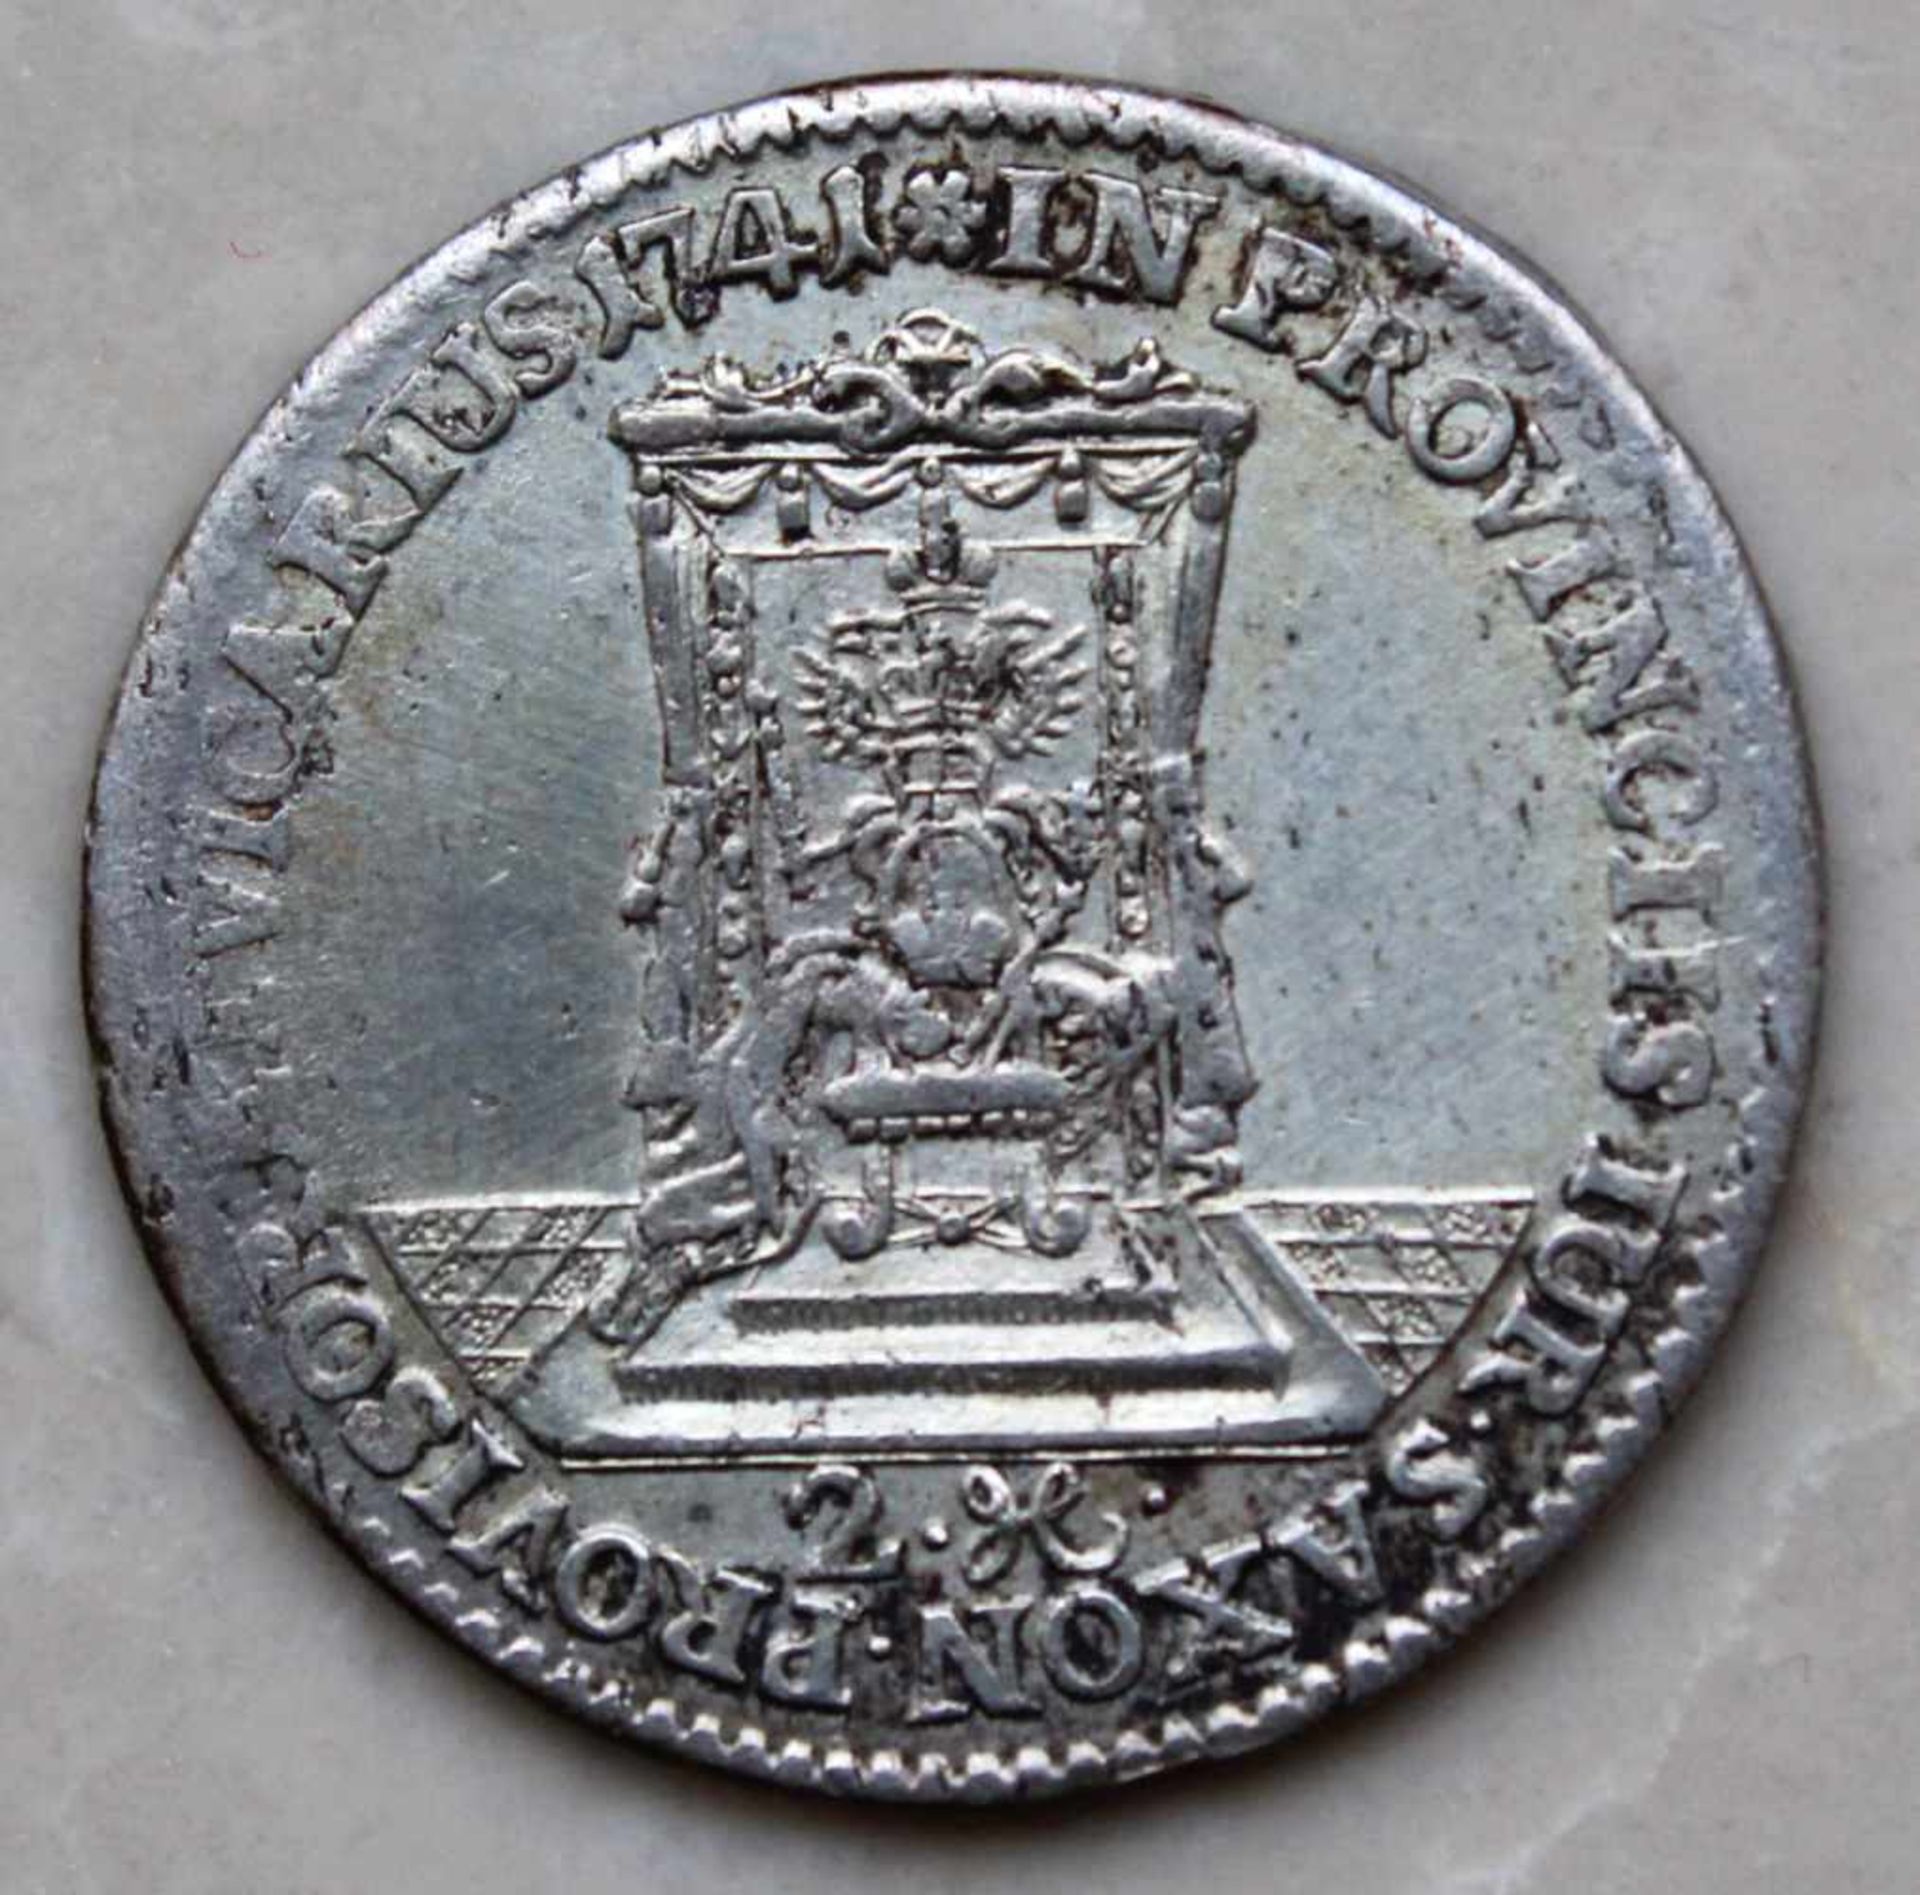 Vikariatstaler 1741. Friedrich August II. 1/2 Thaler.Münze Silber, ca. 3,6 Gramm. Sachen / Dresden. - Bild 2 aus 4